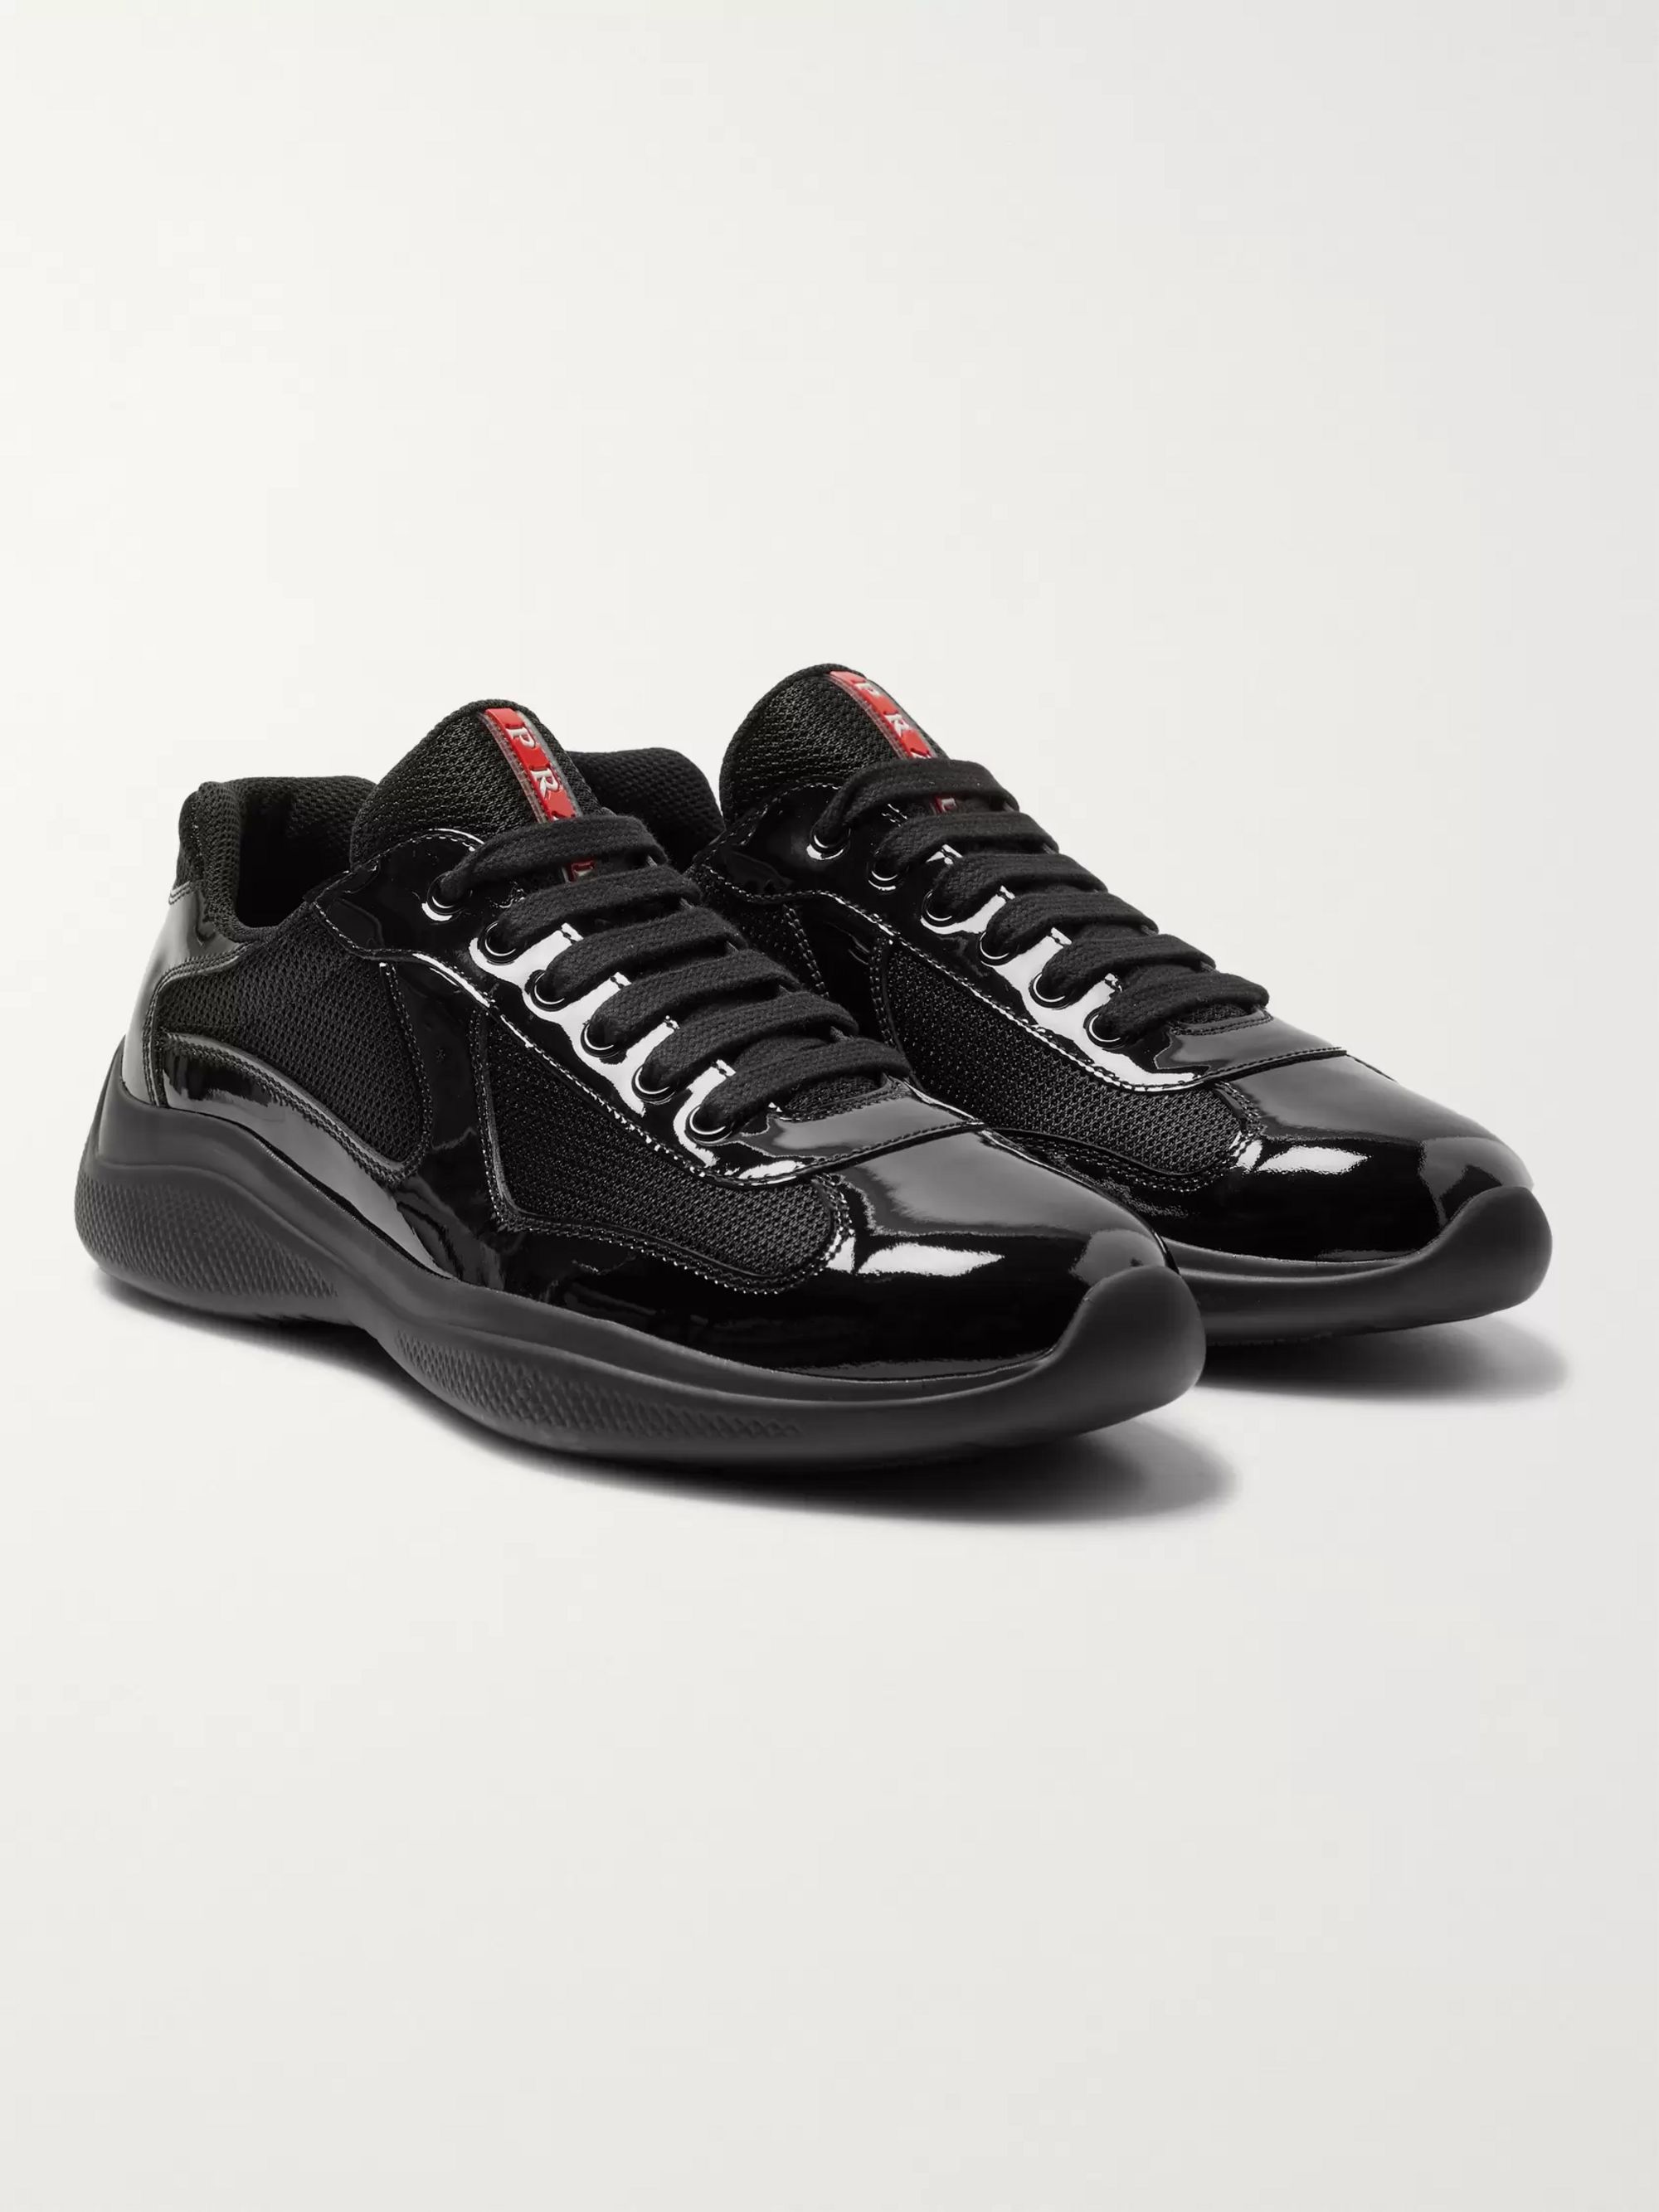 mens patent leather prada sneakers